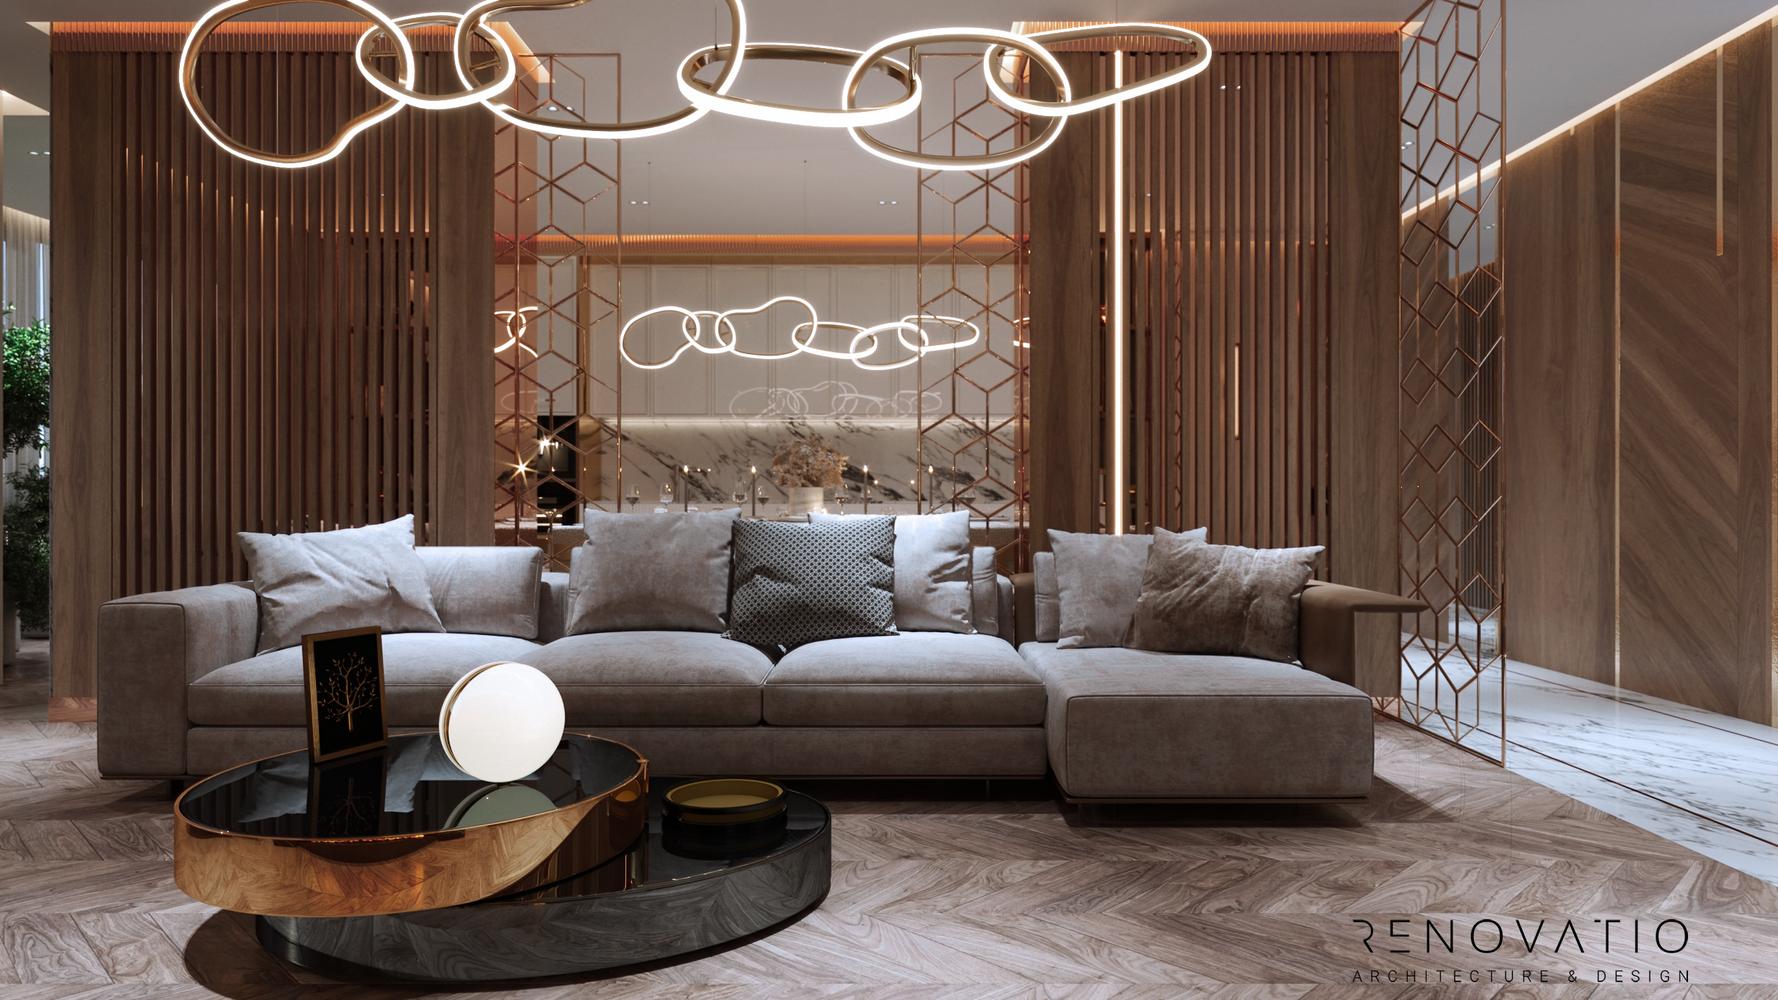 Inside luxury apartment: изображения без лицензионных платежей